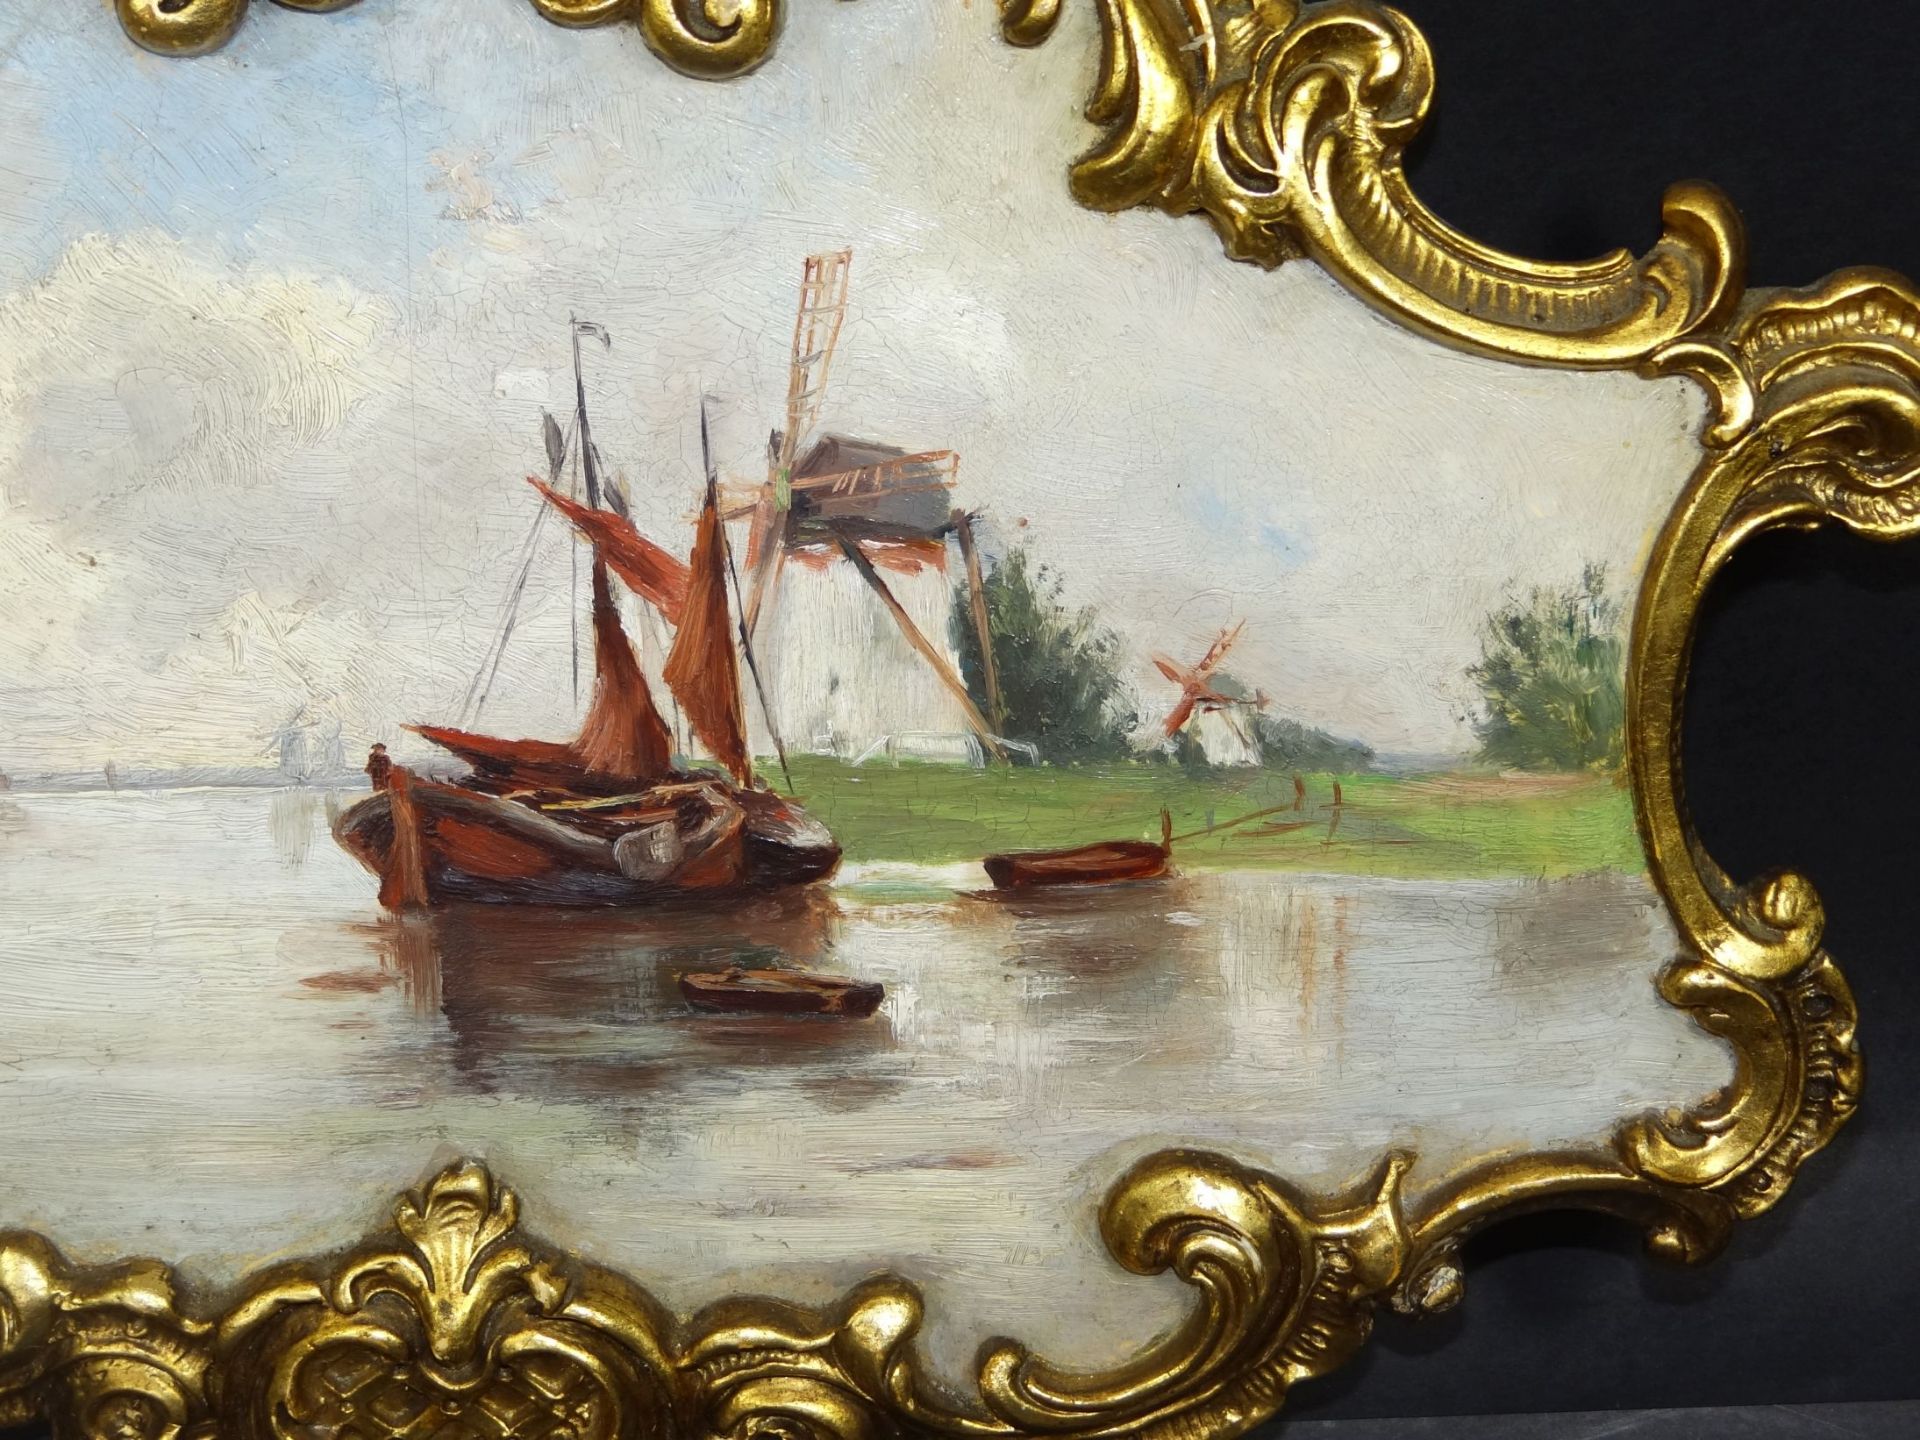 Porzellanbild "Goldscheider" handgemalt, Fischerboot, Rahmen ein Abplatzer, vergoldet, 28x40 cm, - Bild 3 aus 9